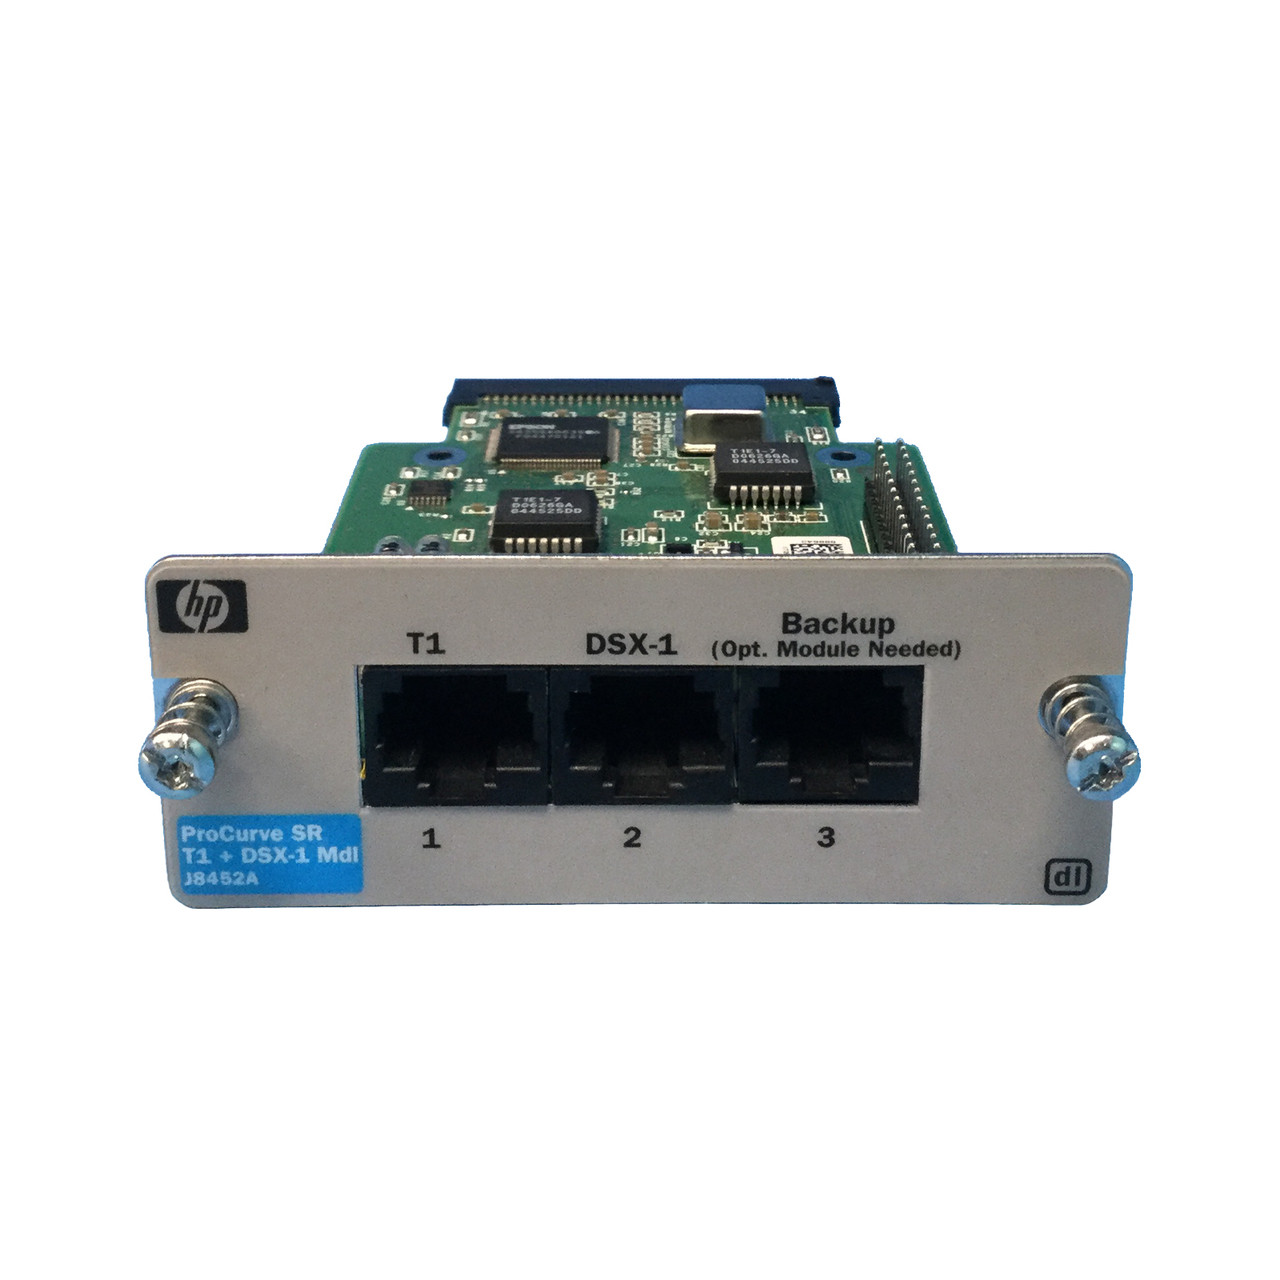 HPe J8452A Procurve SR T1+ DSX-1 Module